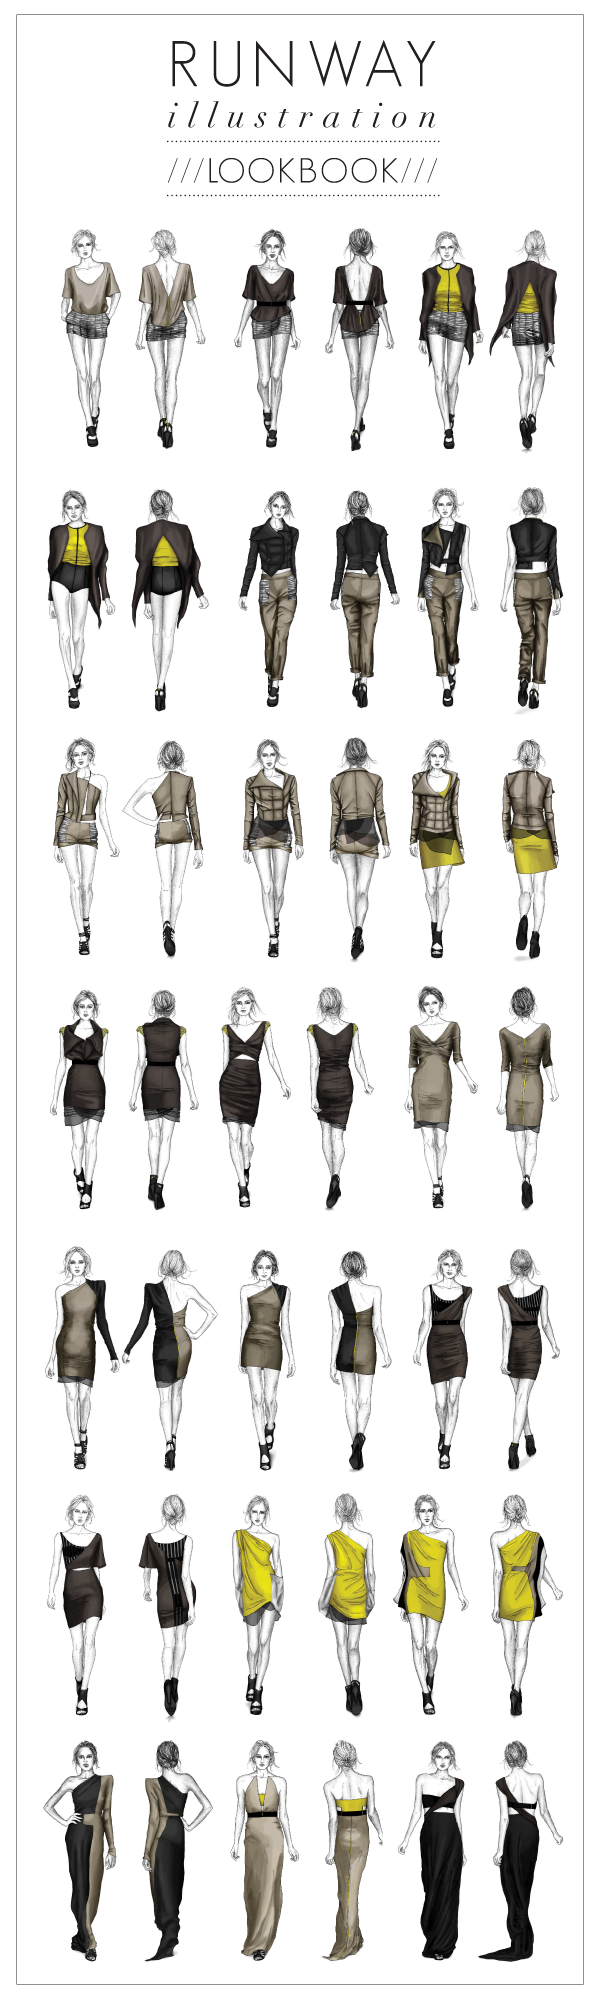 traditional illustration digital illustration fashion illustration fashion design